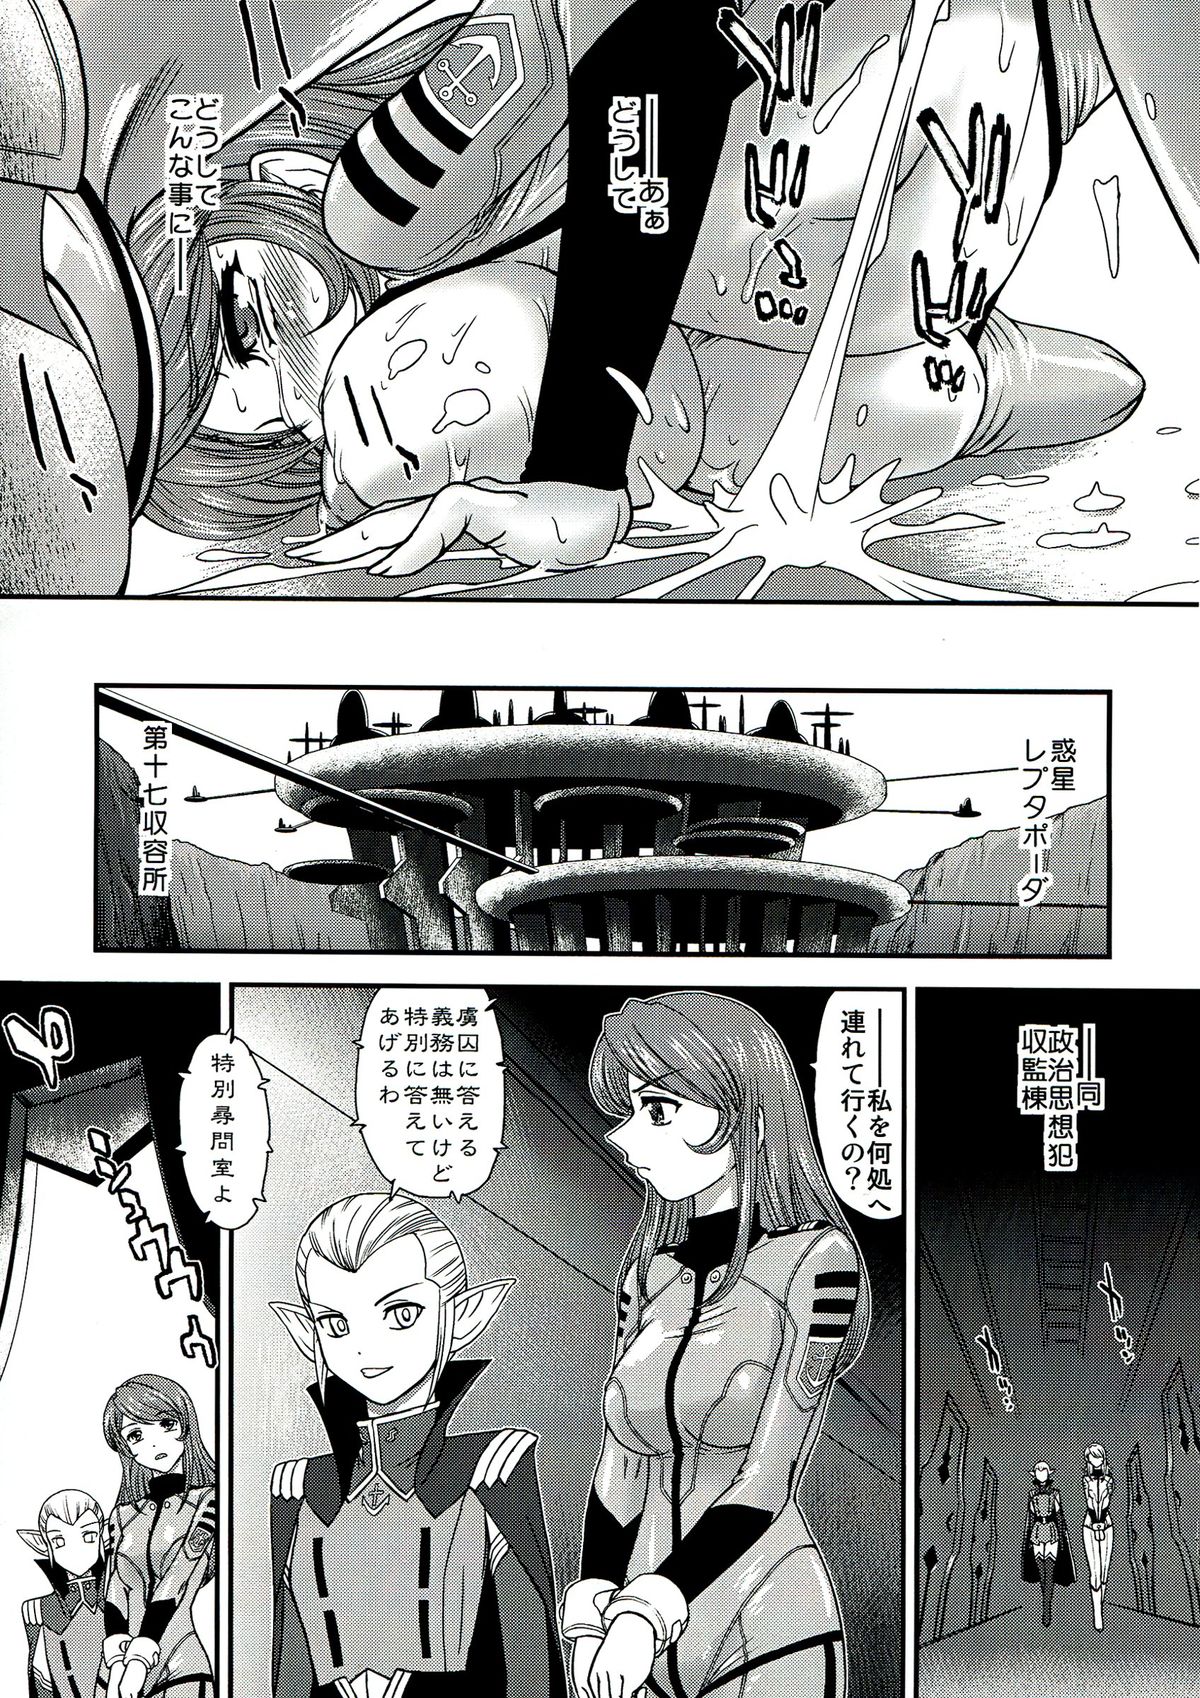 (C85) [Behind Moon (Q)] YAMATO 2199 Alternative - 2 Reputapouda Jinmon Shitsu (Space Battleship Yamato 2199) page 7 full